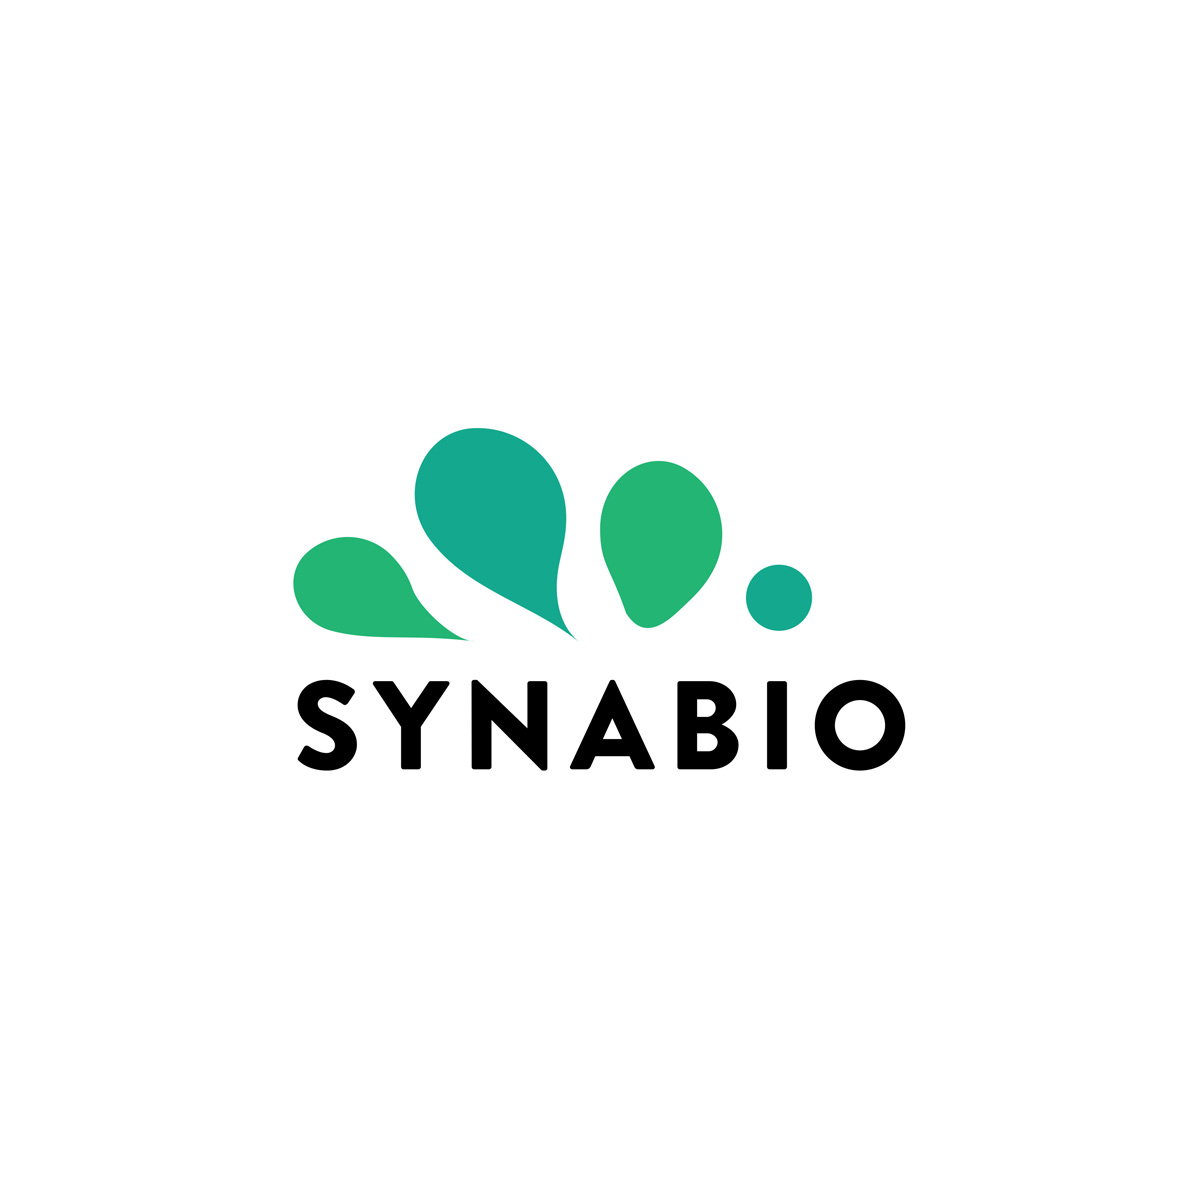 (c) Synabio.com